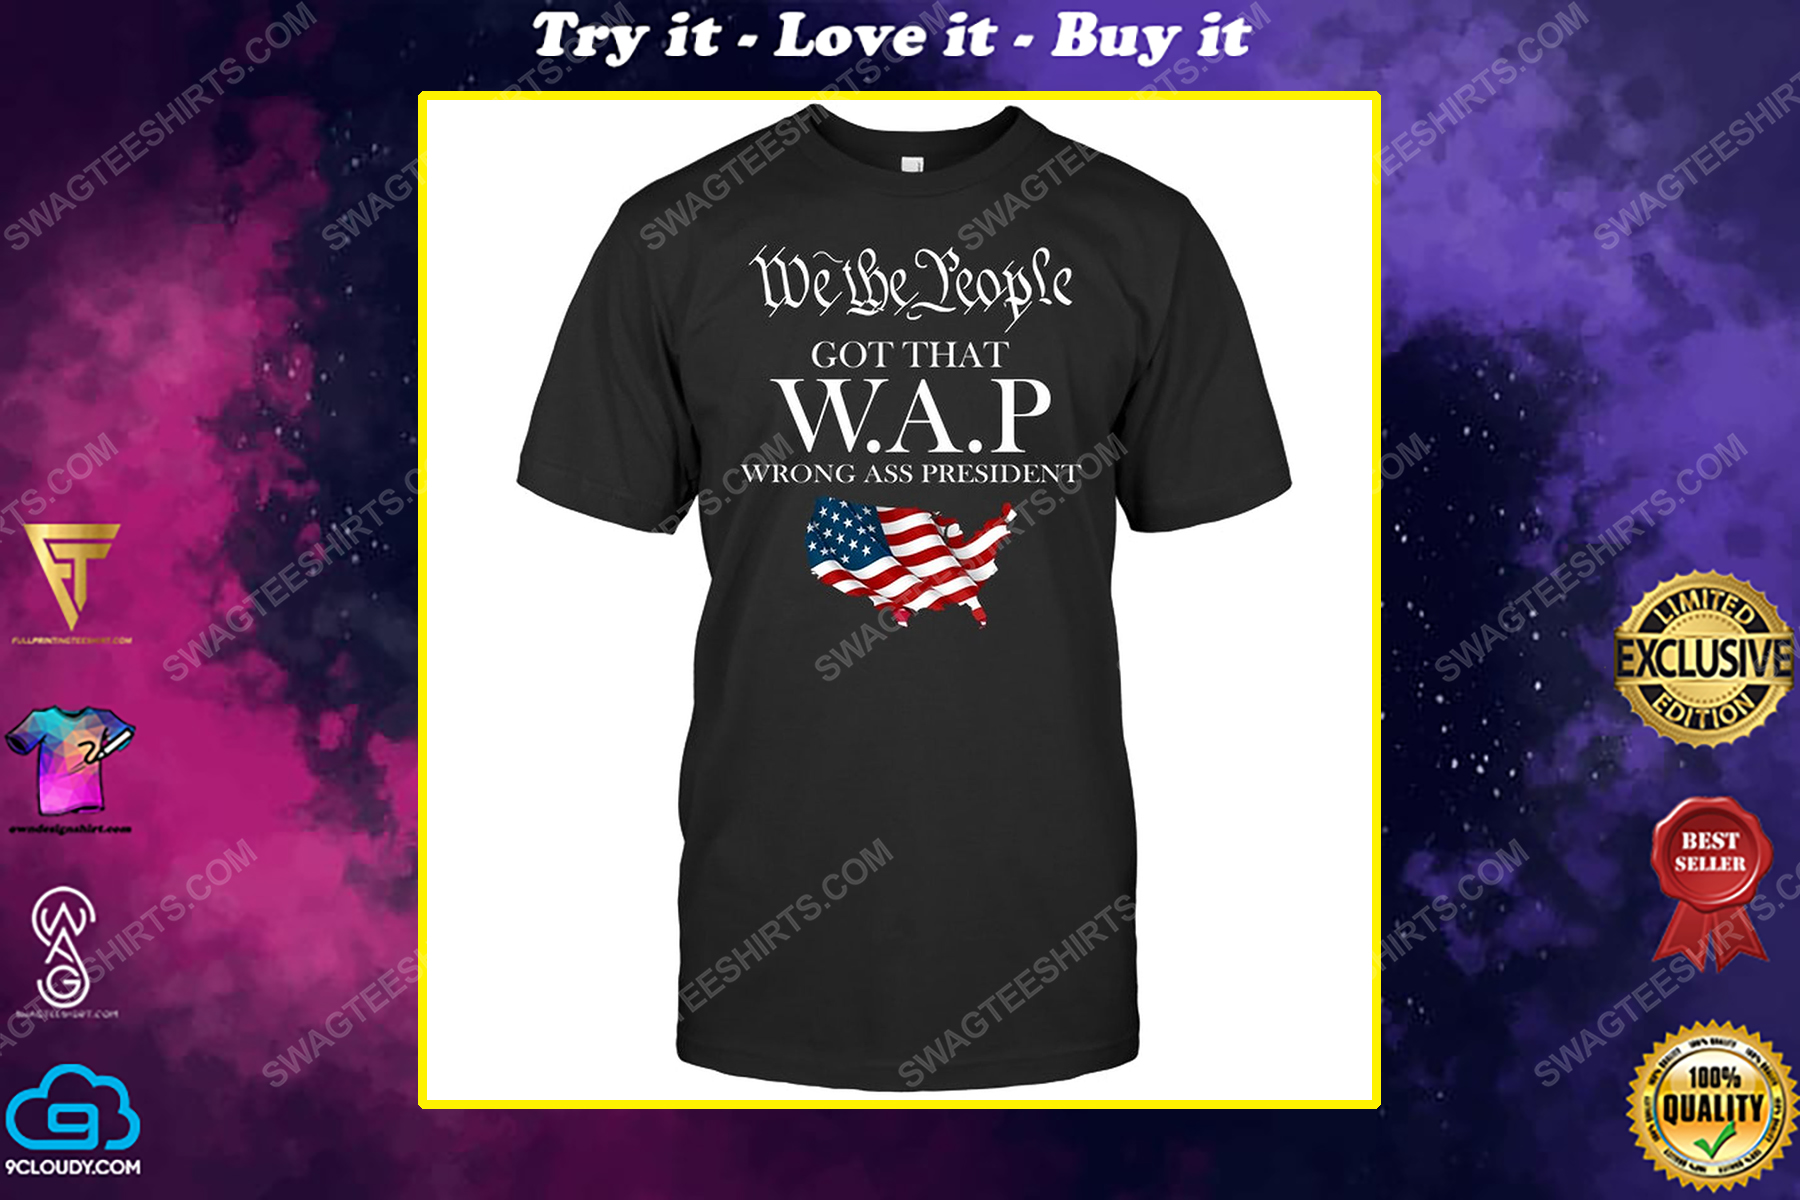 We the people got that wap wrong ass president political shirt